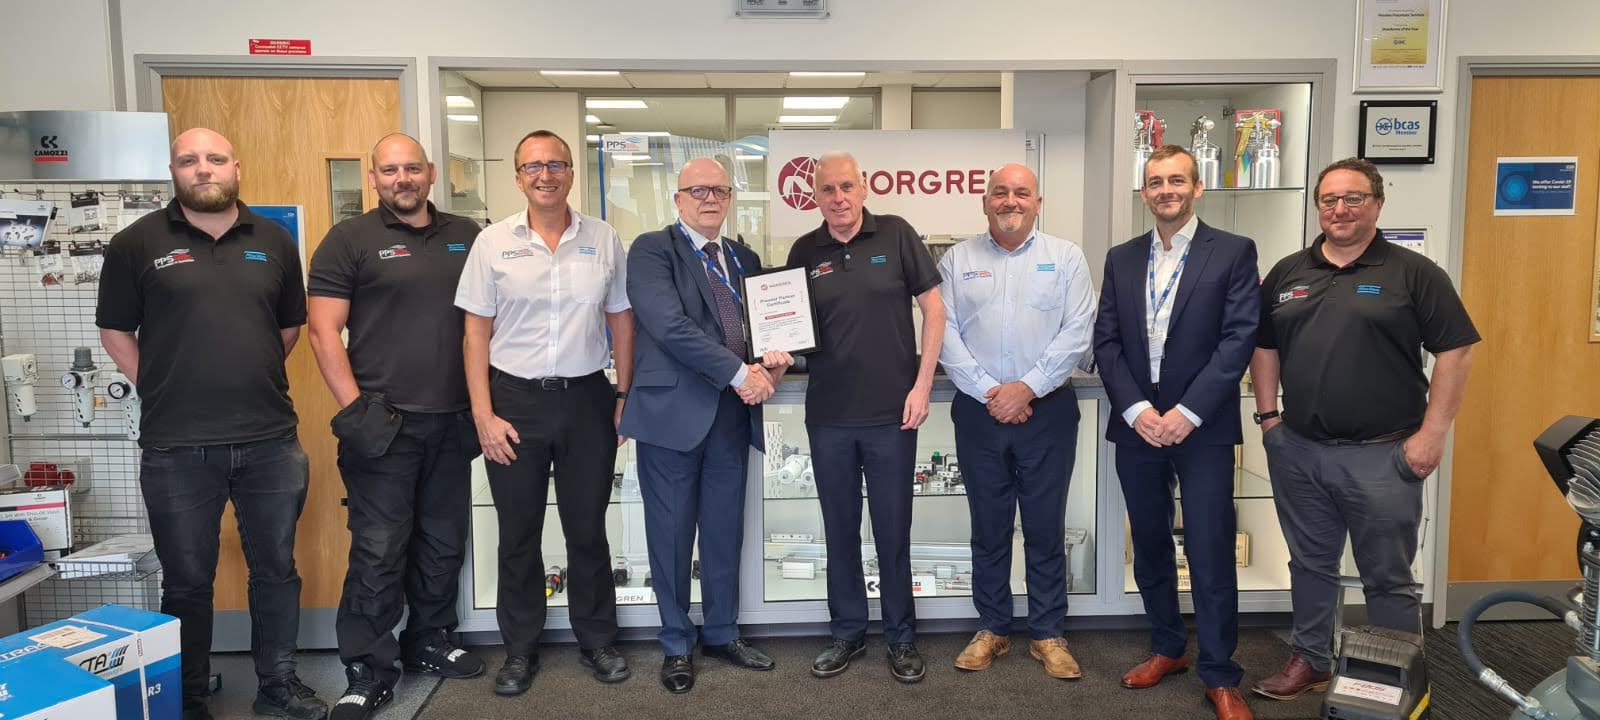 The PPSS pneumatics team receive Norgren Premier Partner certificate